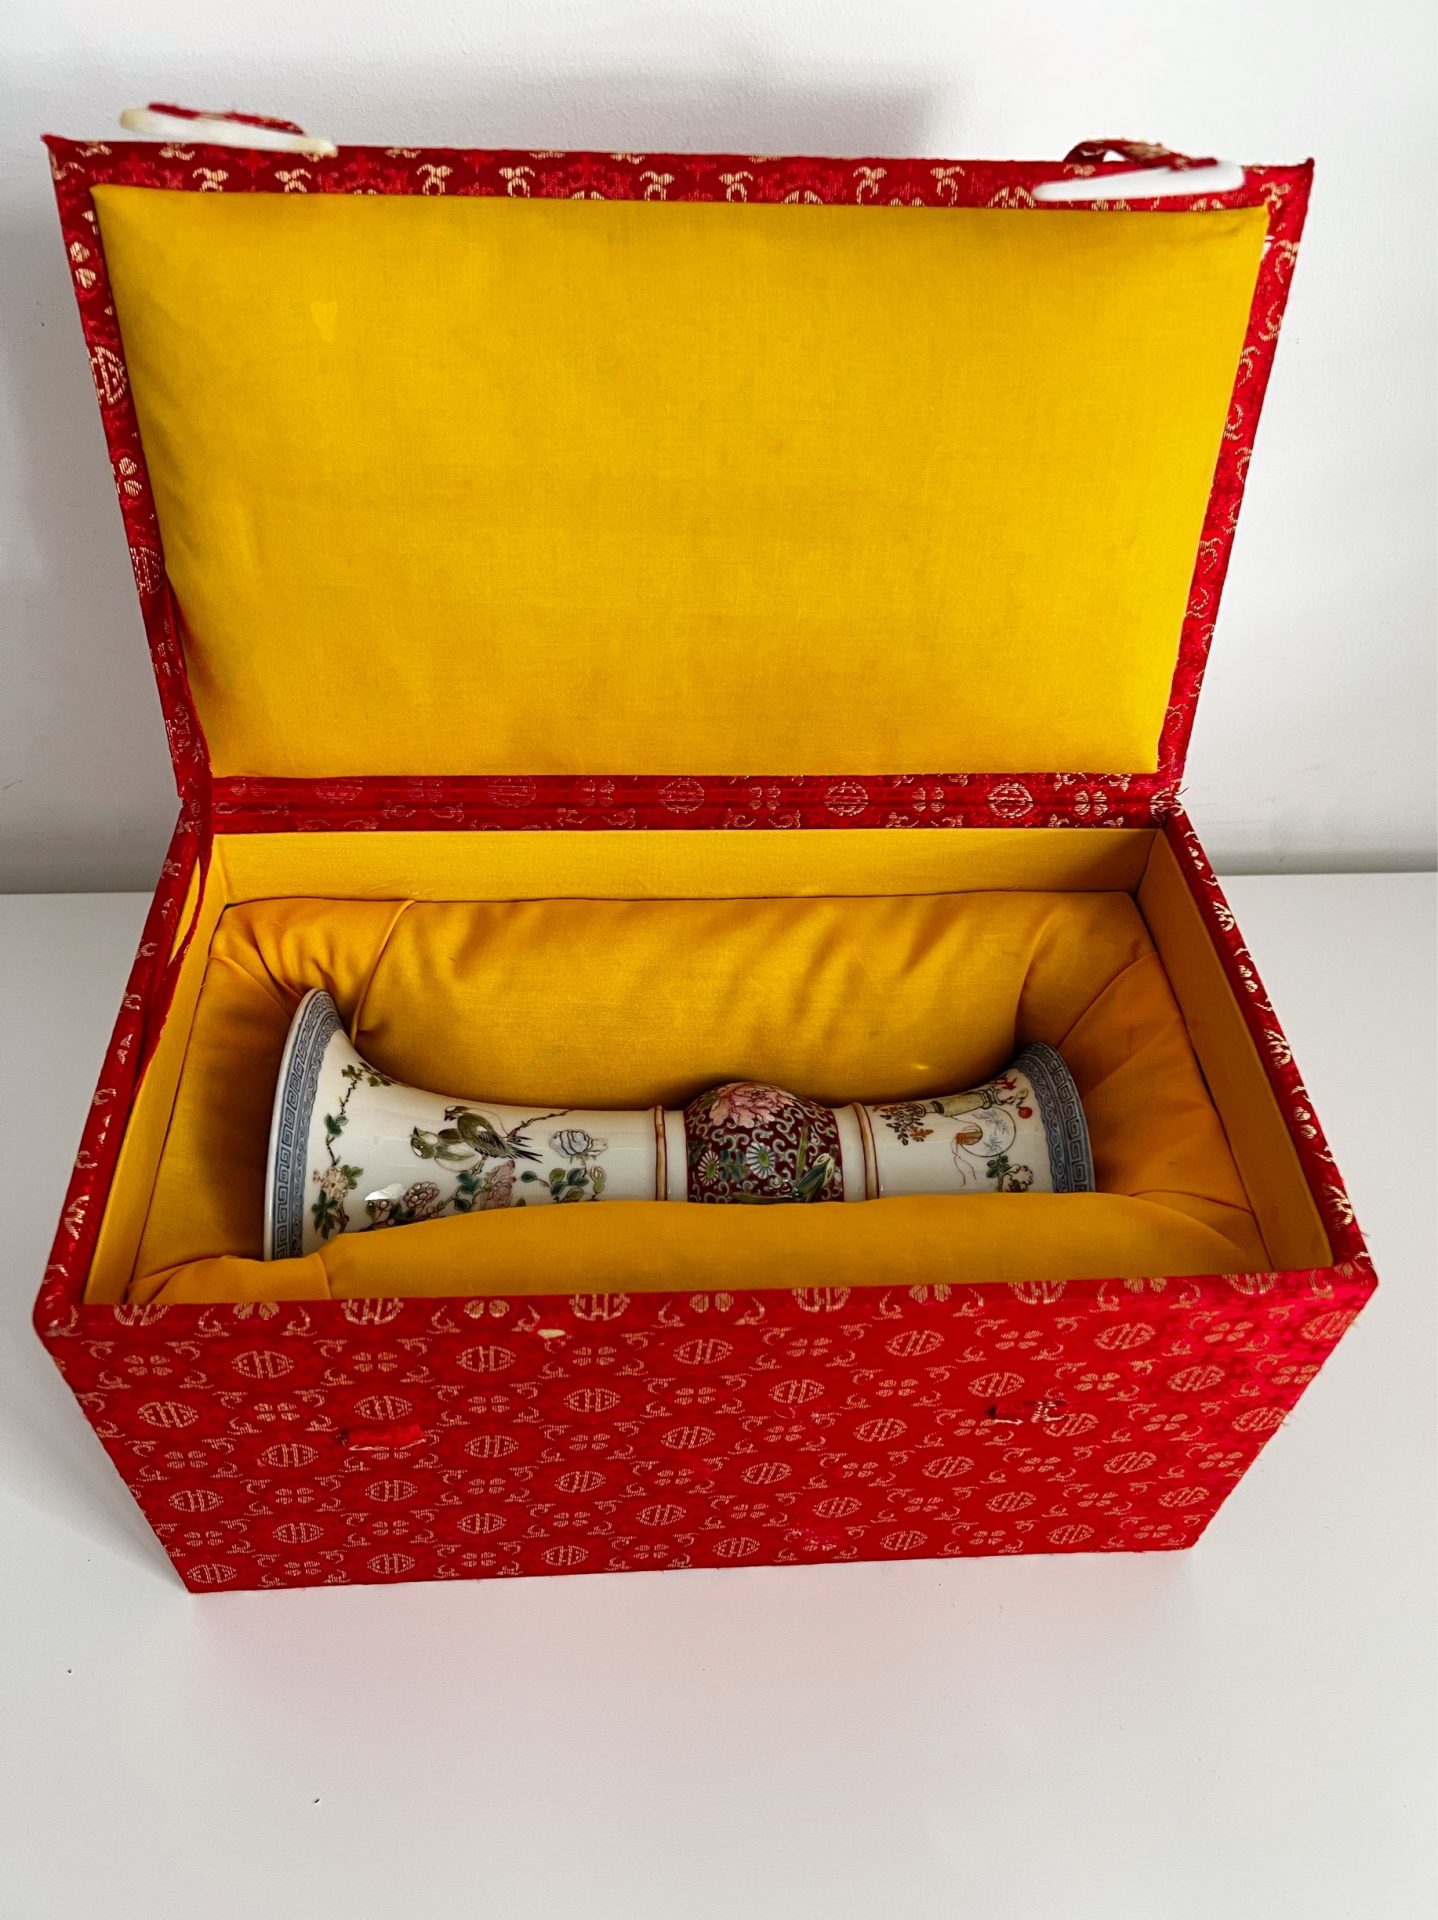 中国古董珐琅釉瓷器古形花瓶带盒“9”（H）#J220301 - BidamountLive